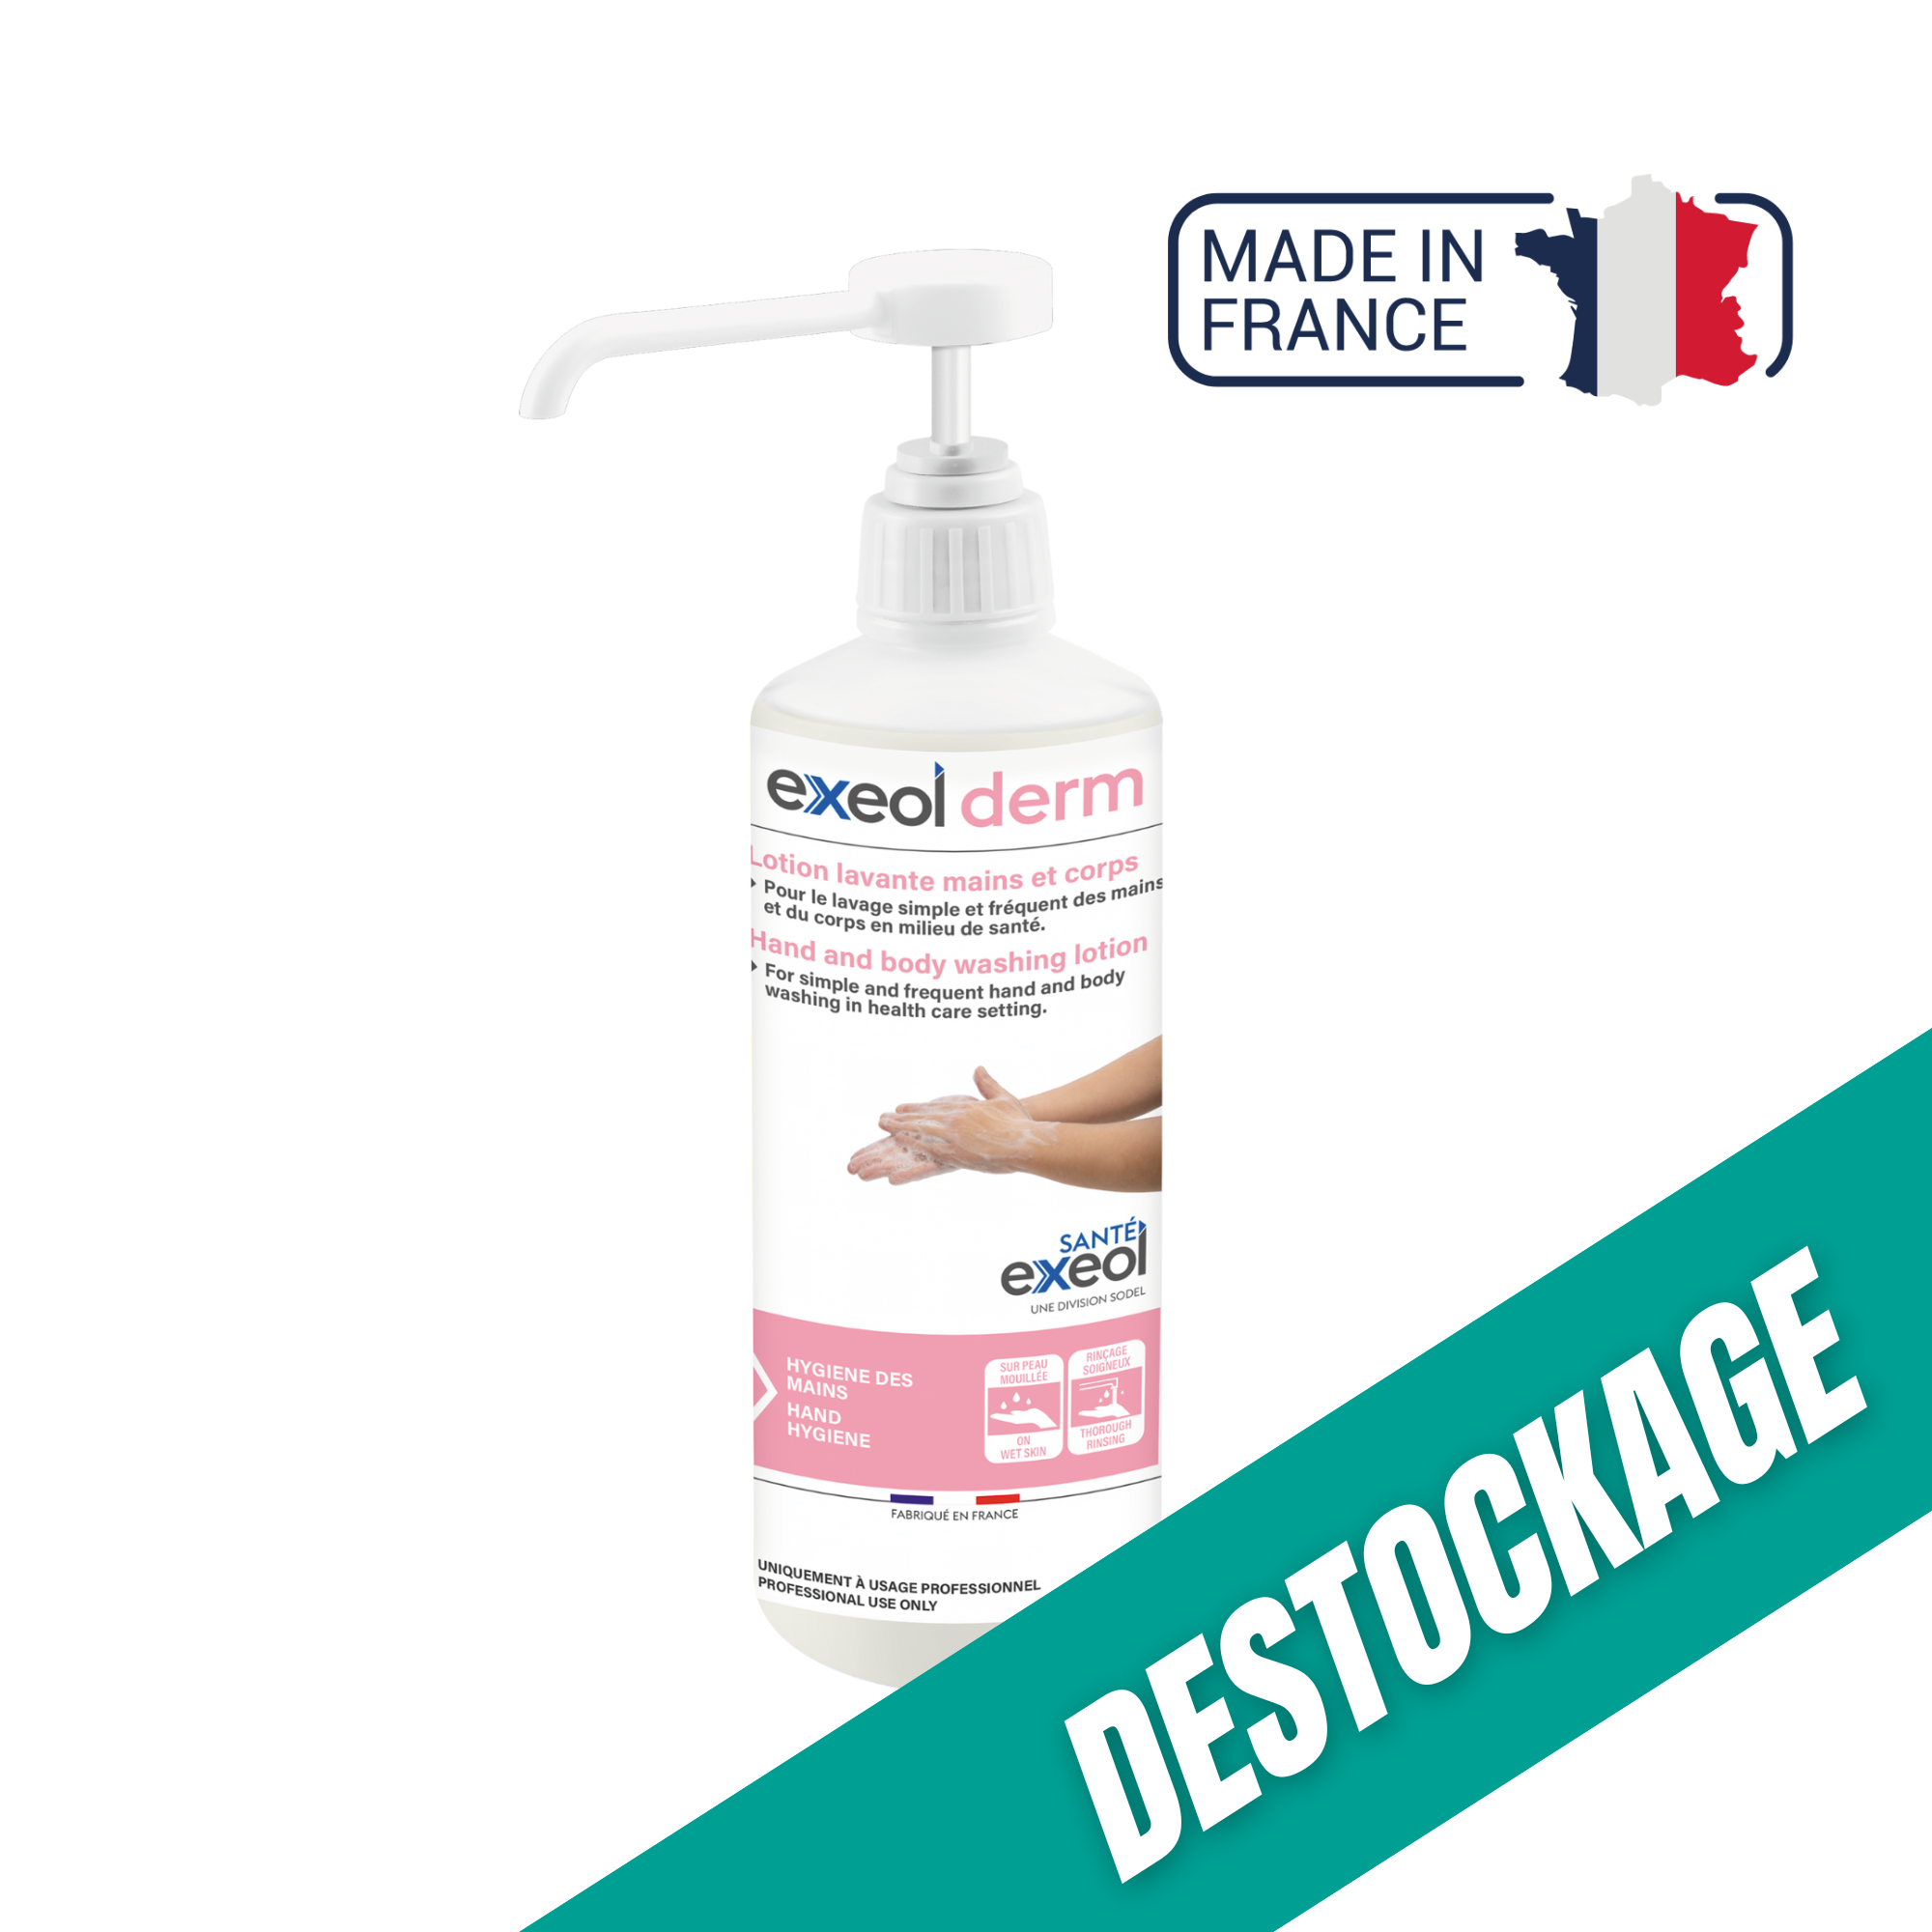 Lotion lavante mains et corps - Exeol derm - Sodel // Destockage